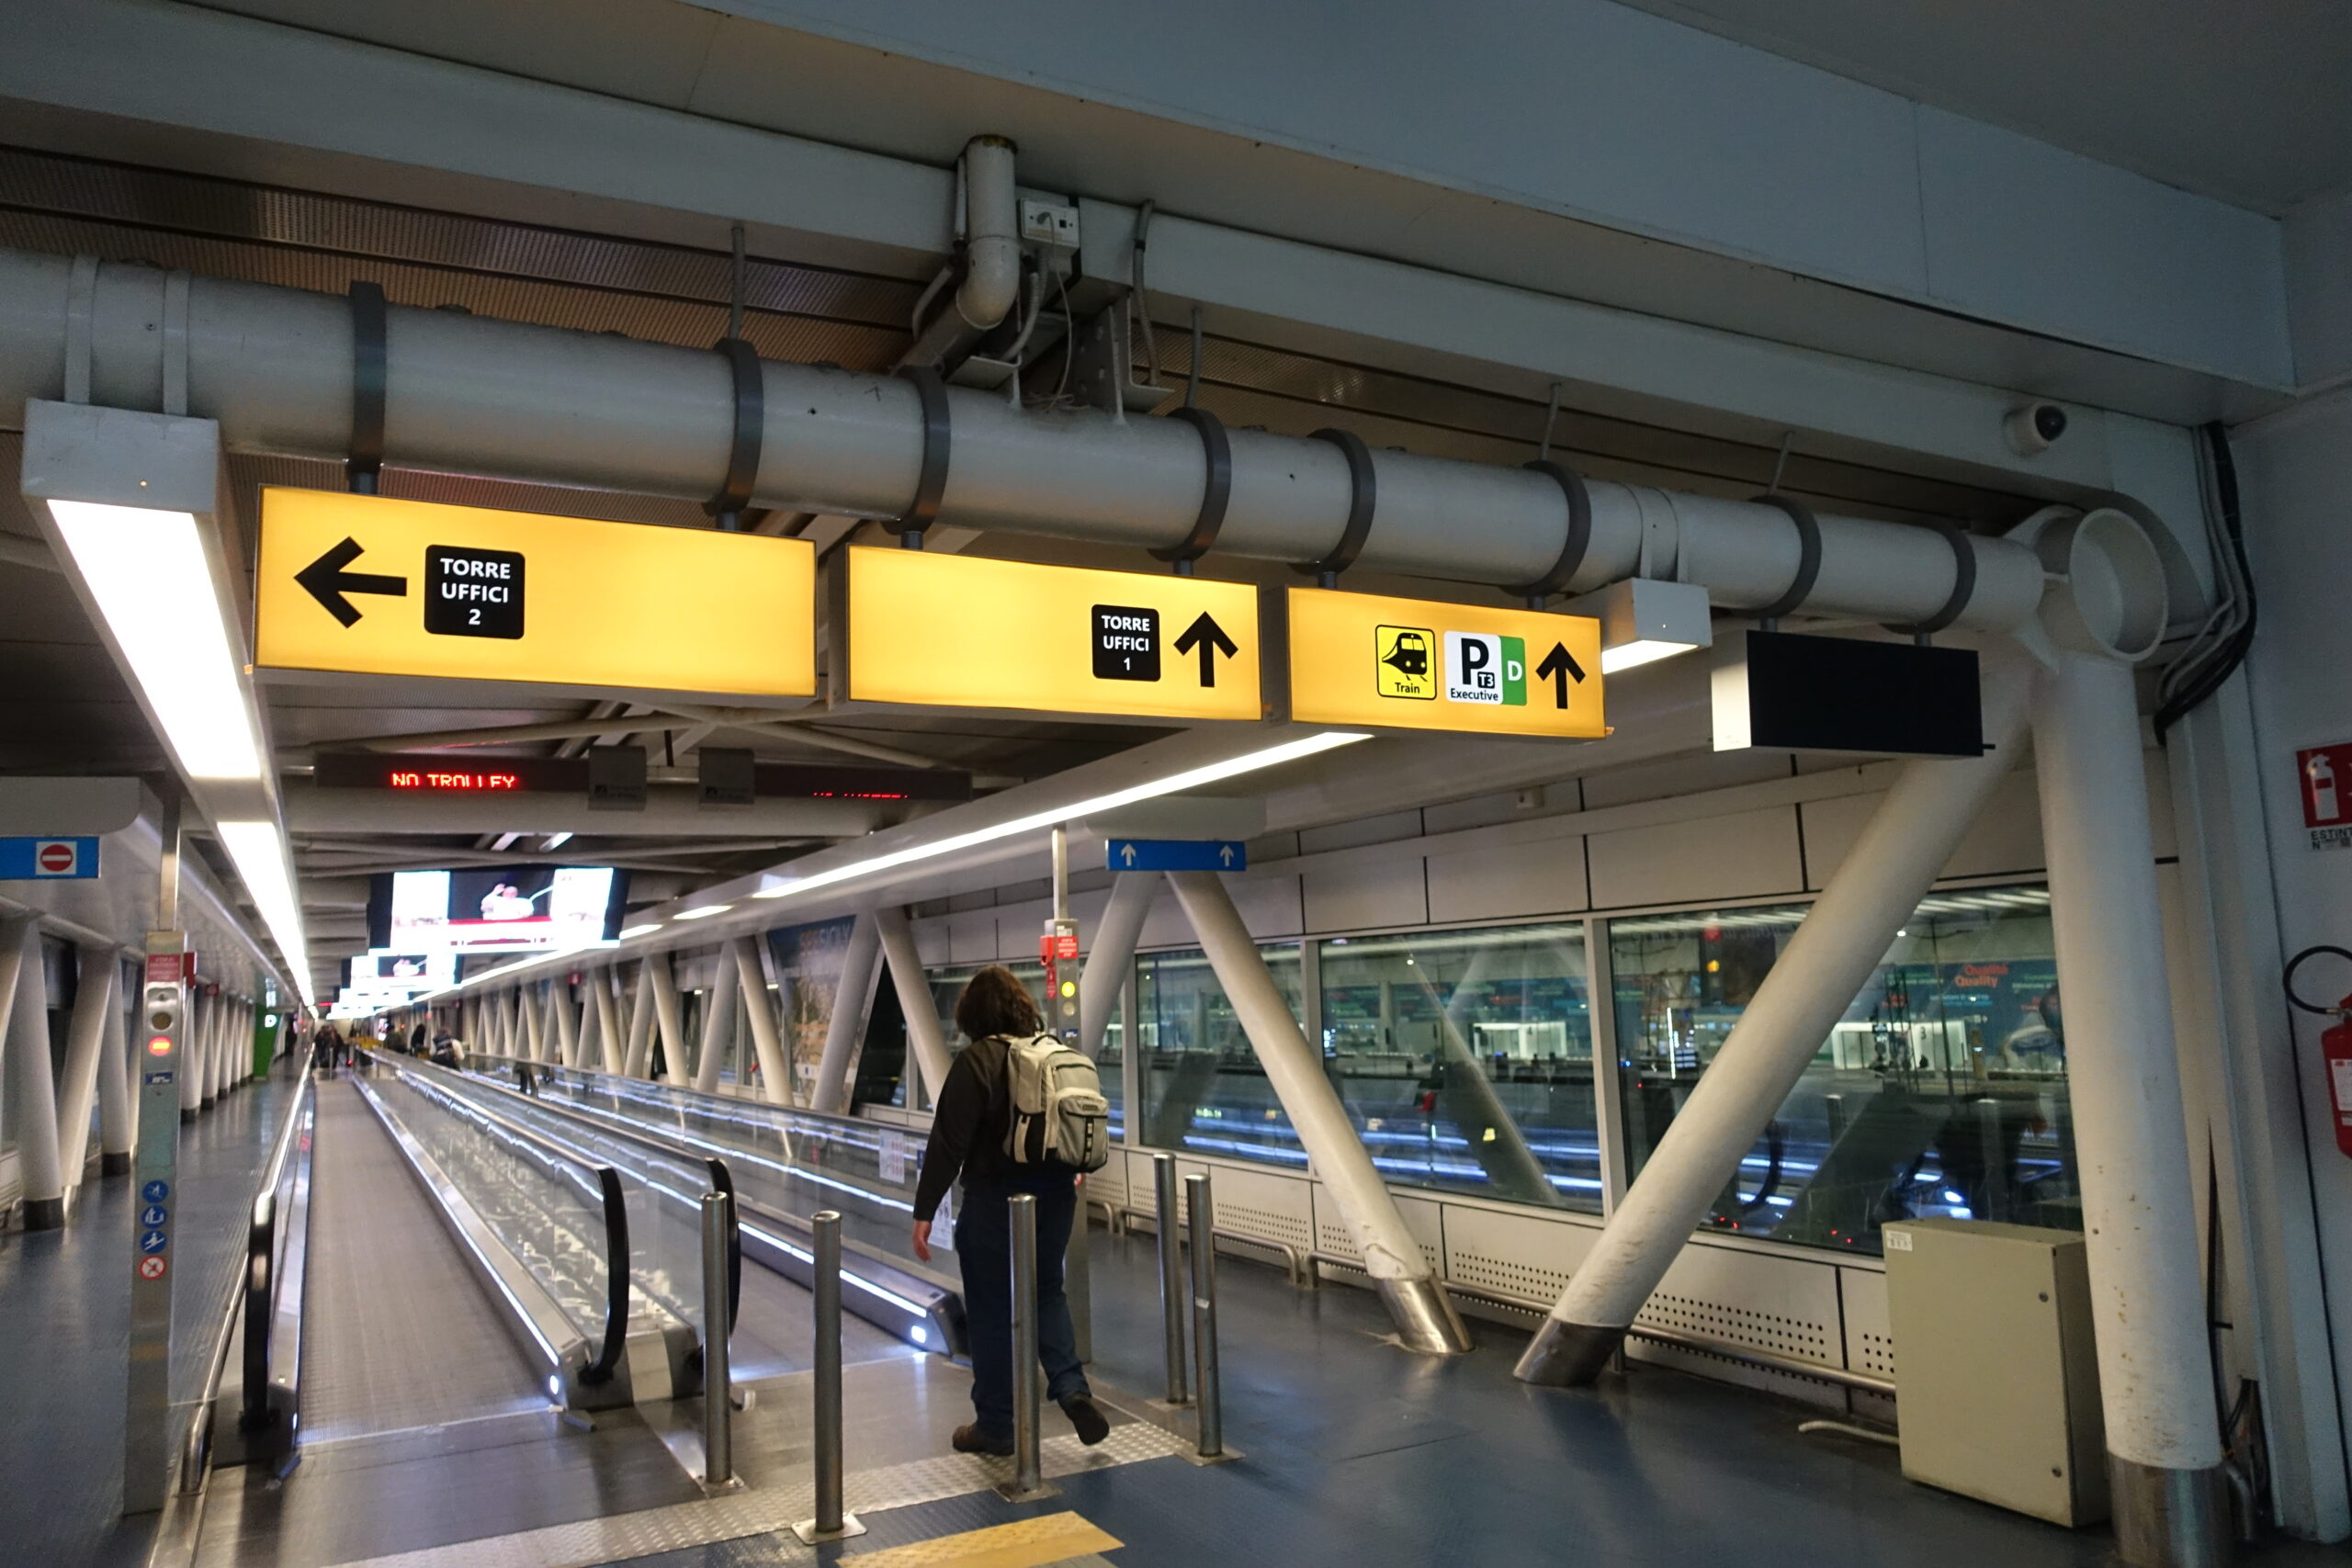 ローマフィミチーノ空港、レオナルドエクスプレスでのアクセス方法